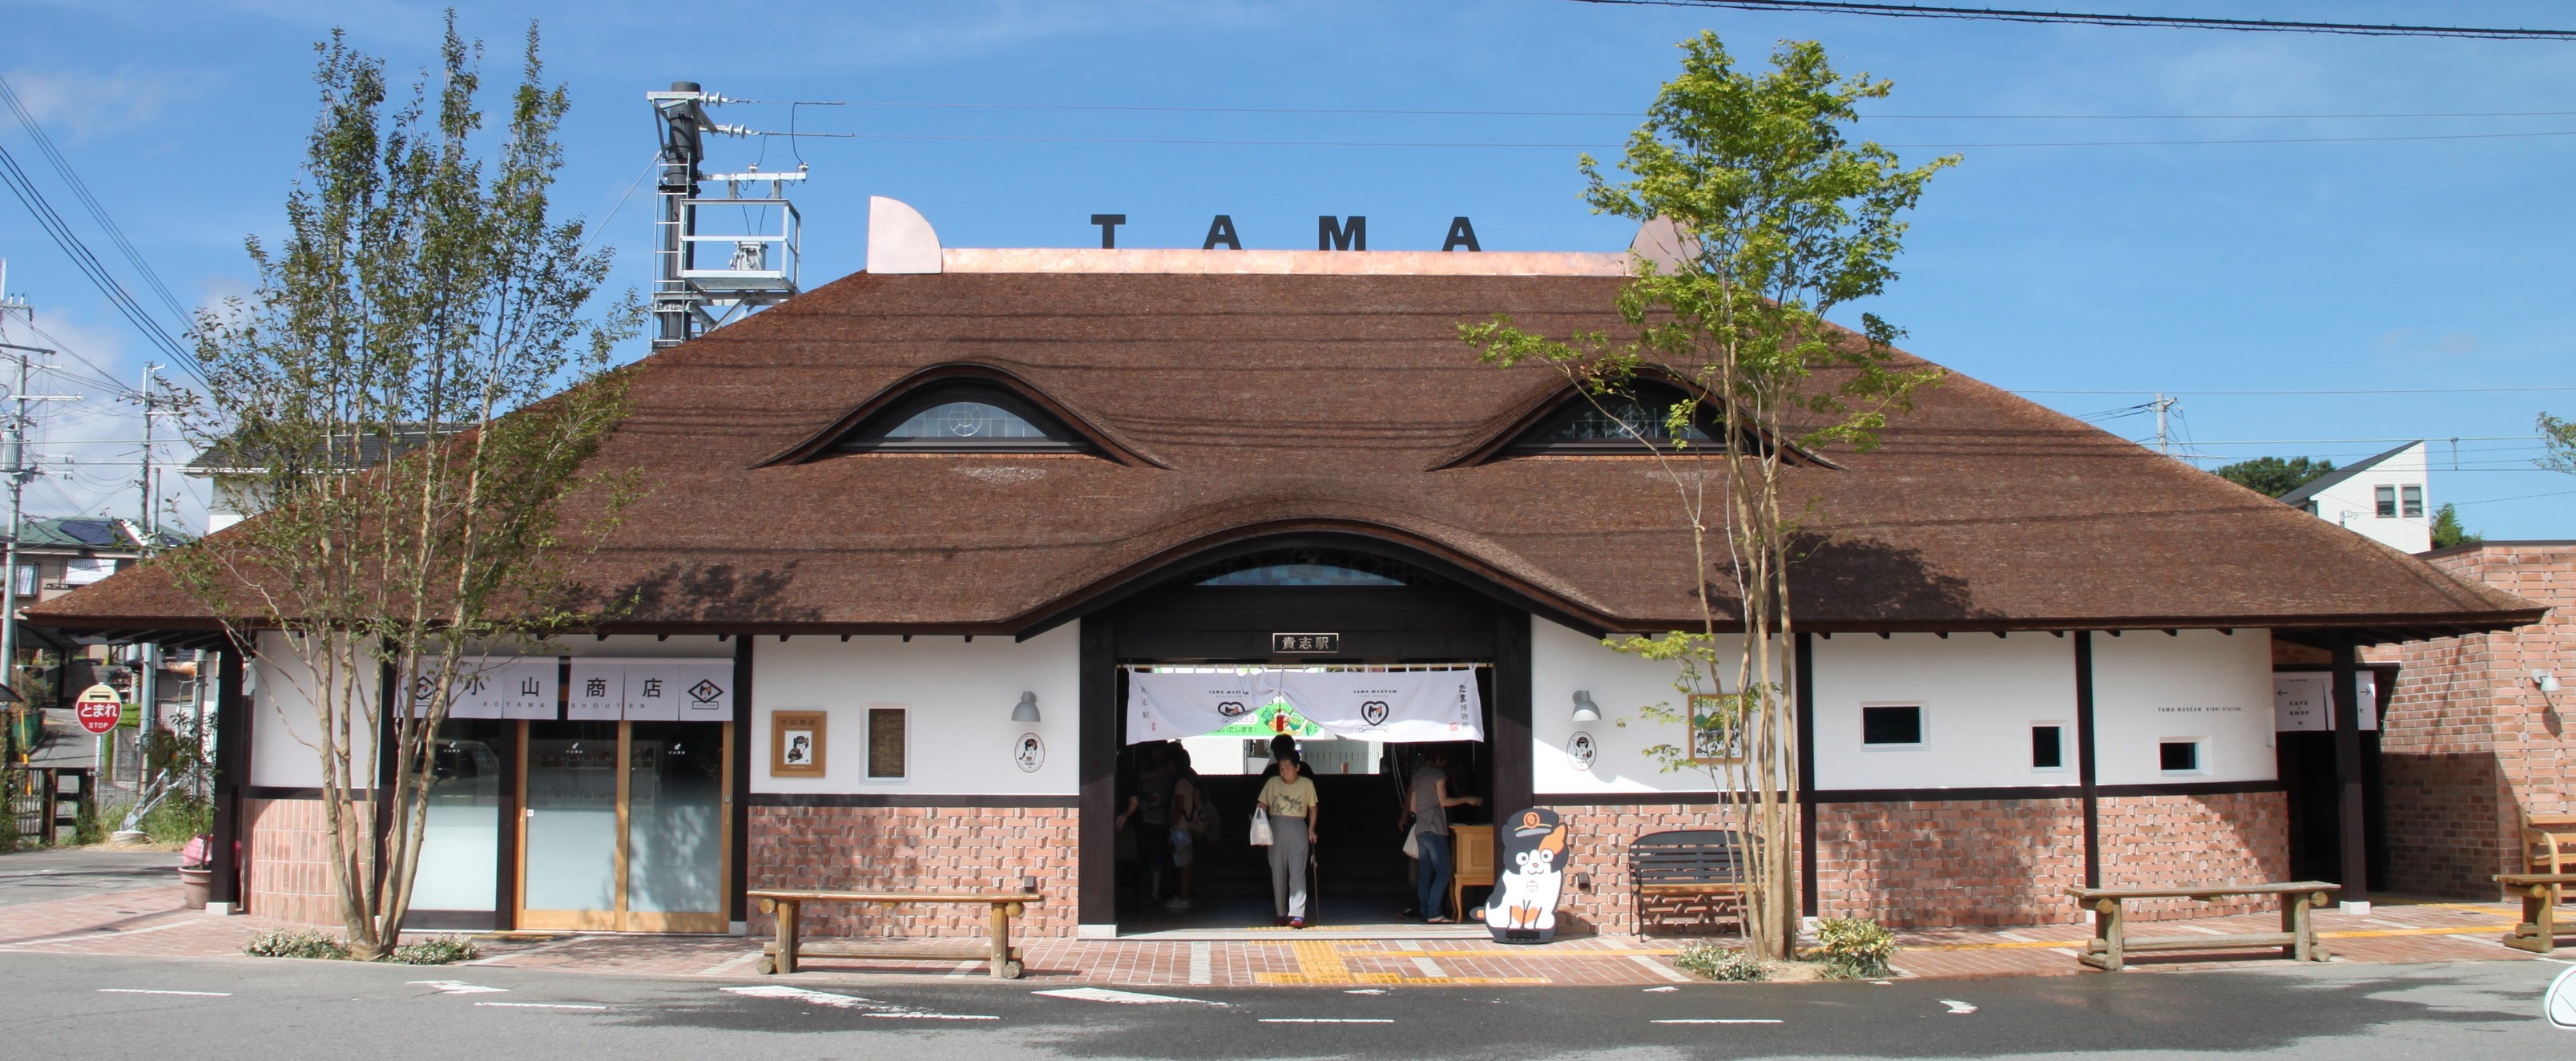 นายสถานีทามะเปลี่ยนสถานะจาก ไอดอลประจำสถานี เป็น ซุปเปอร์แมวที่หนึ่งในญี่ปุ่น!